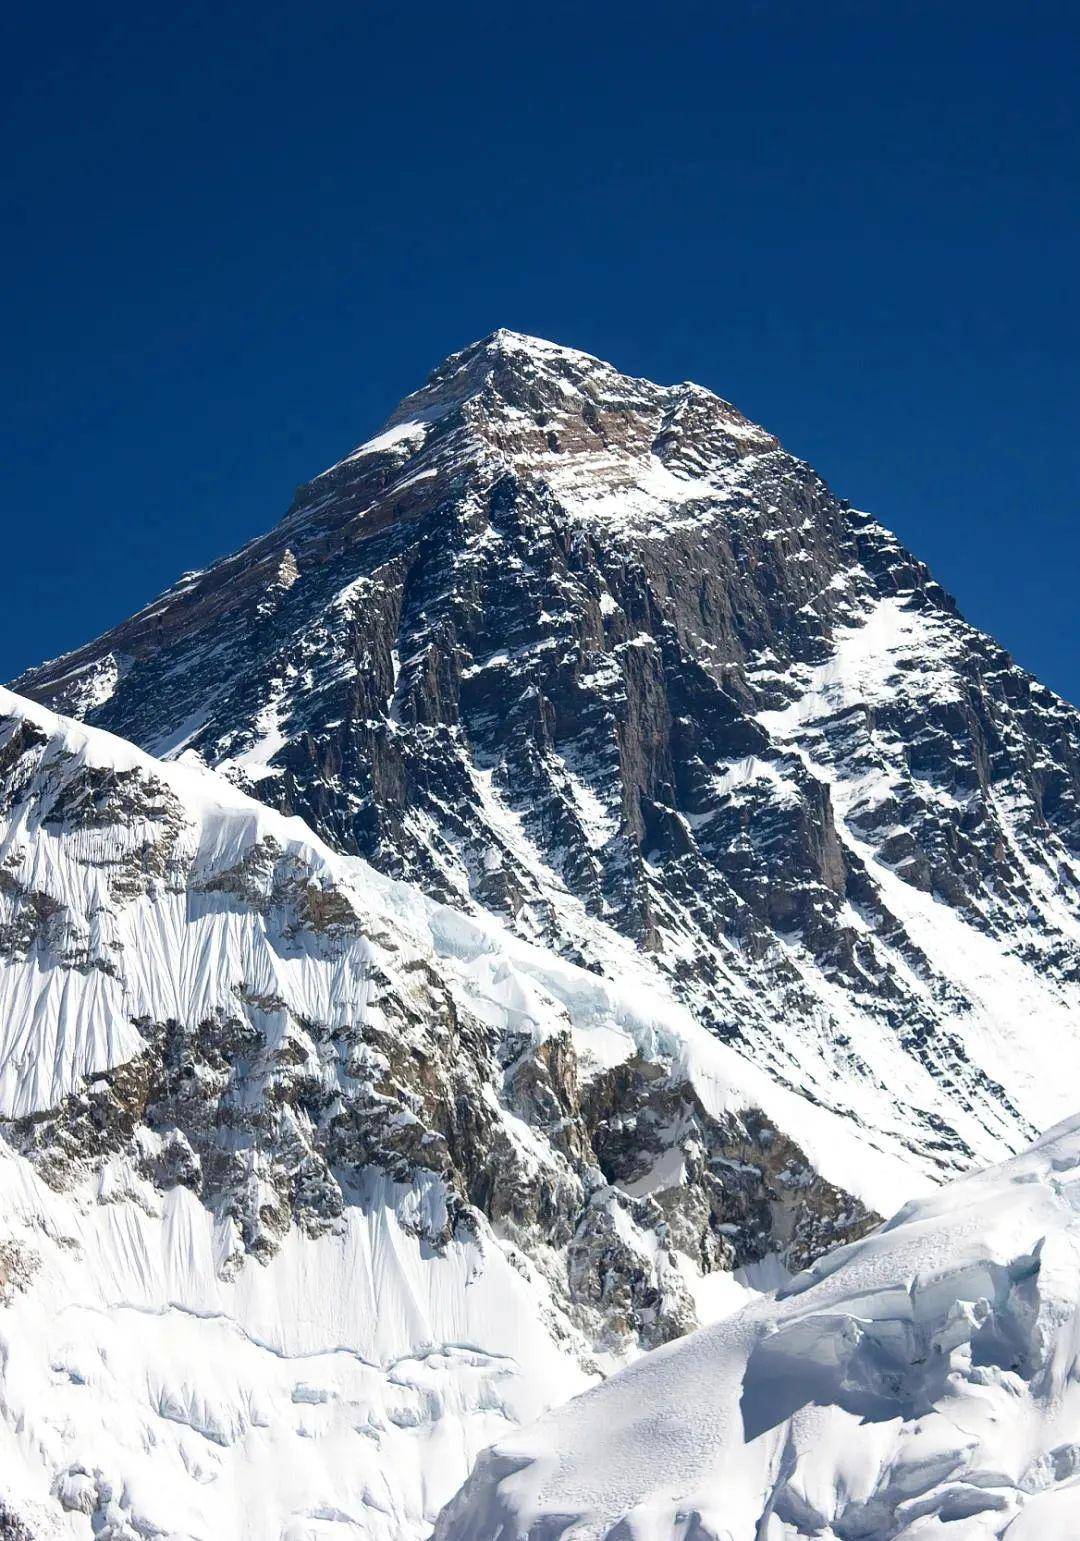 神秘的珠穆朗玛峰因其极端的气候环境,一度被称为"  生命禁区","